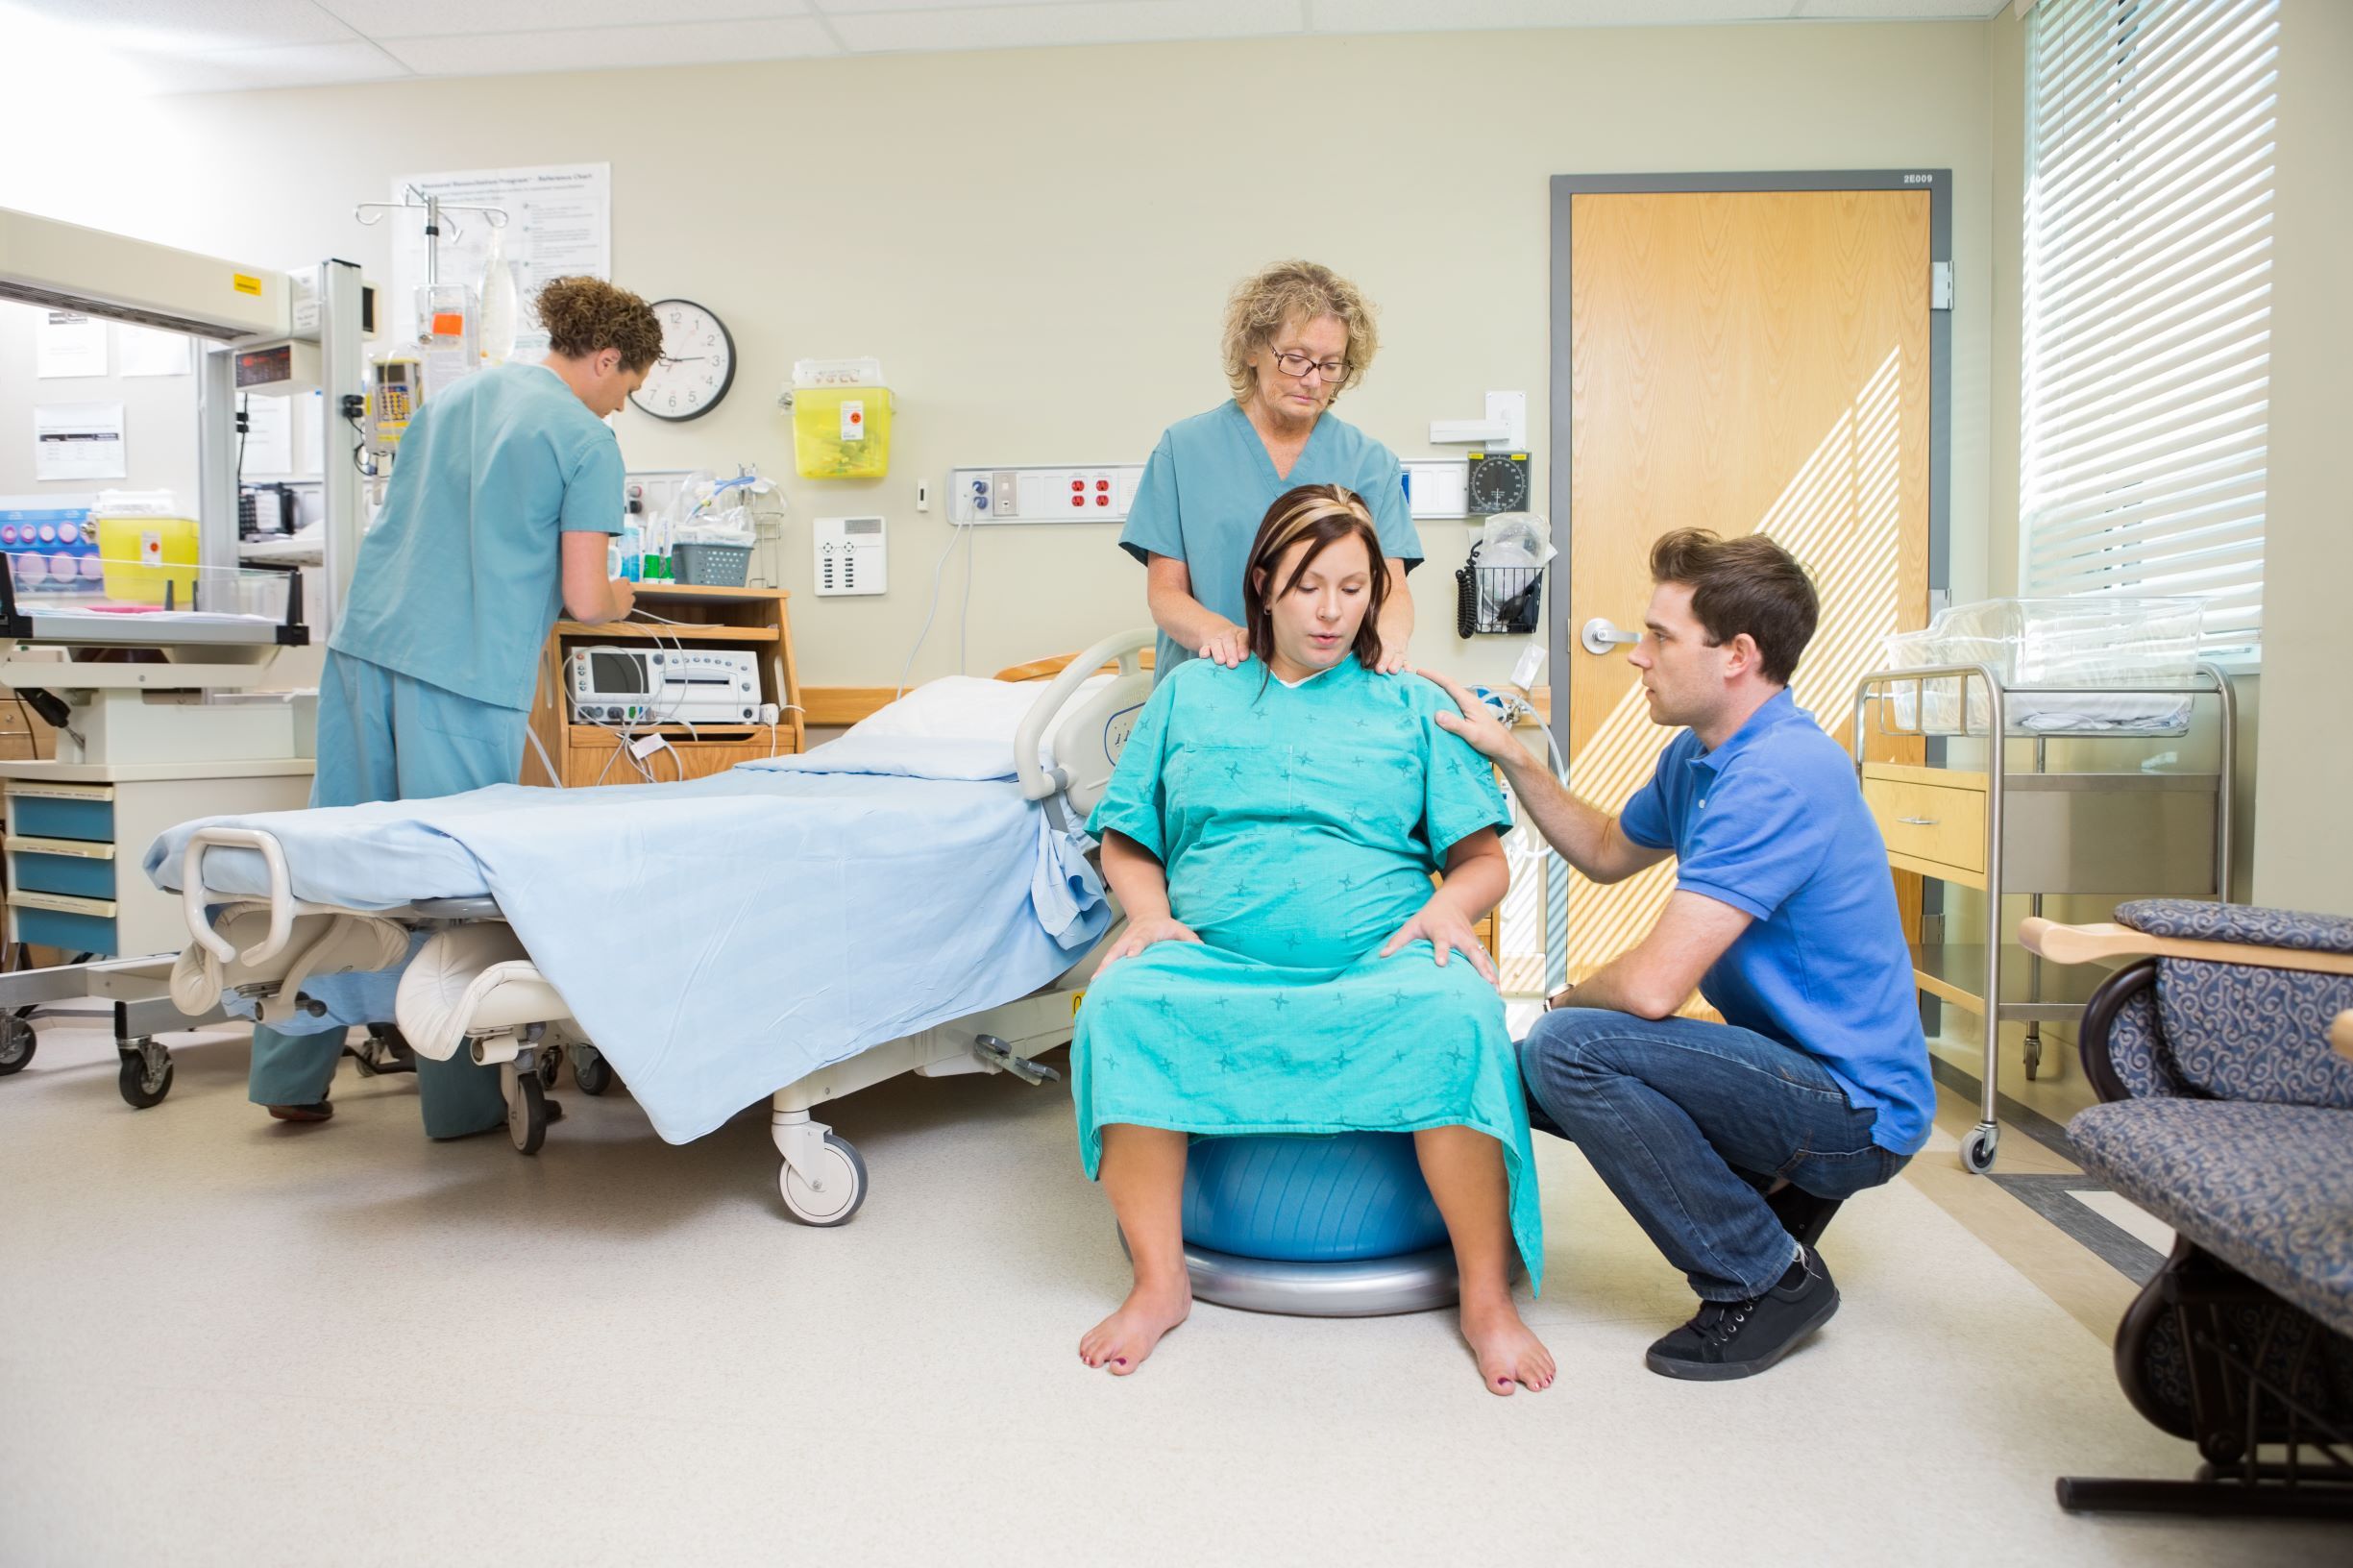 Agresja pacjentek wobec personelu na sali porodowej - doniesienie wstępne